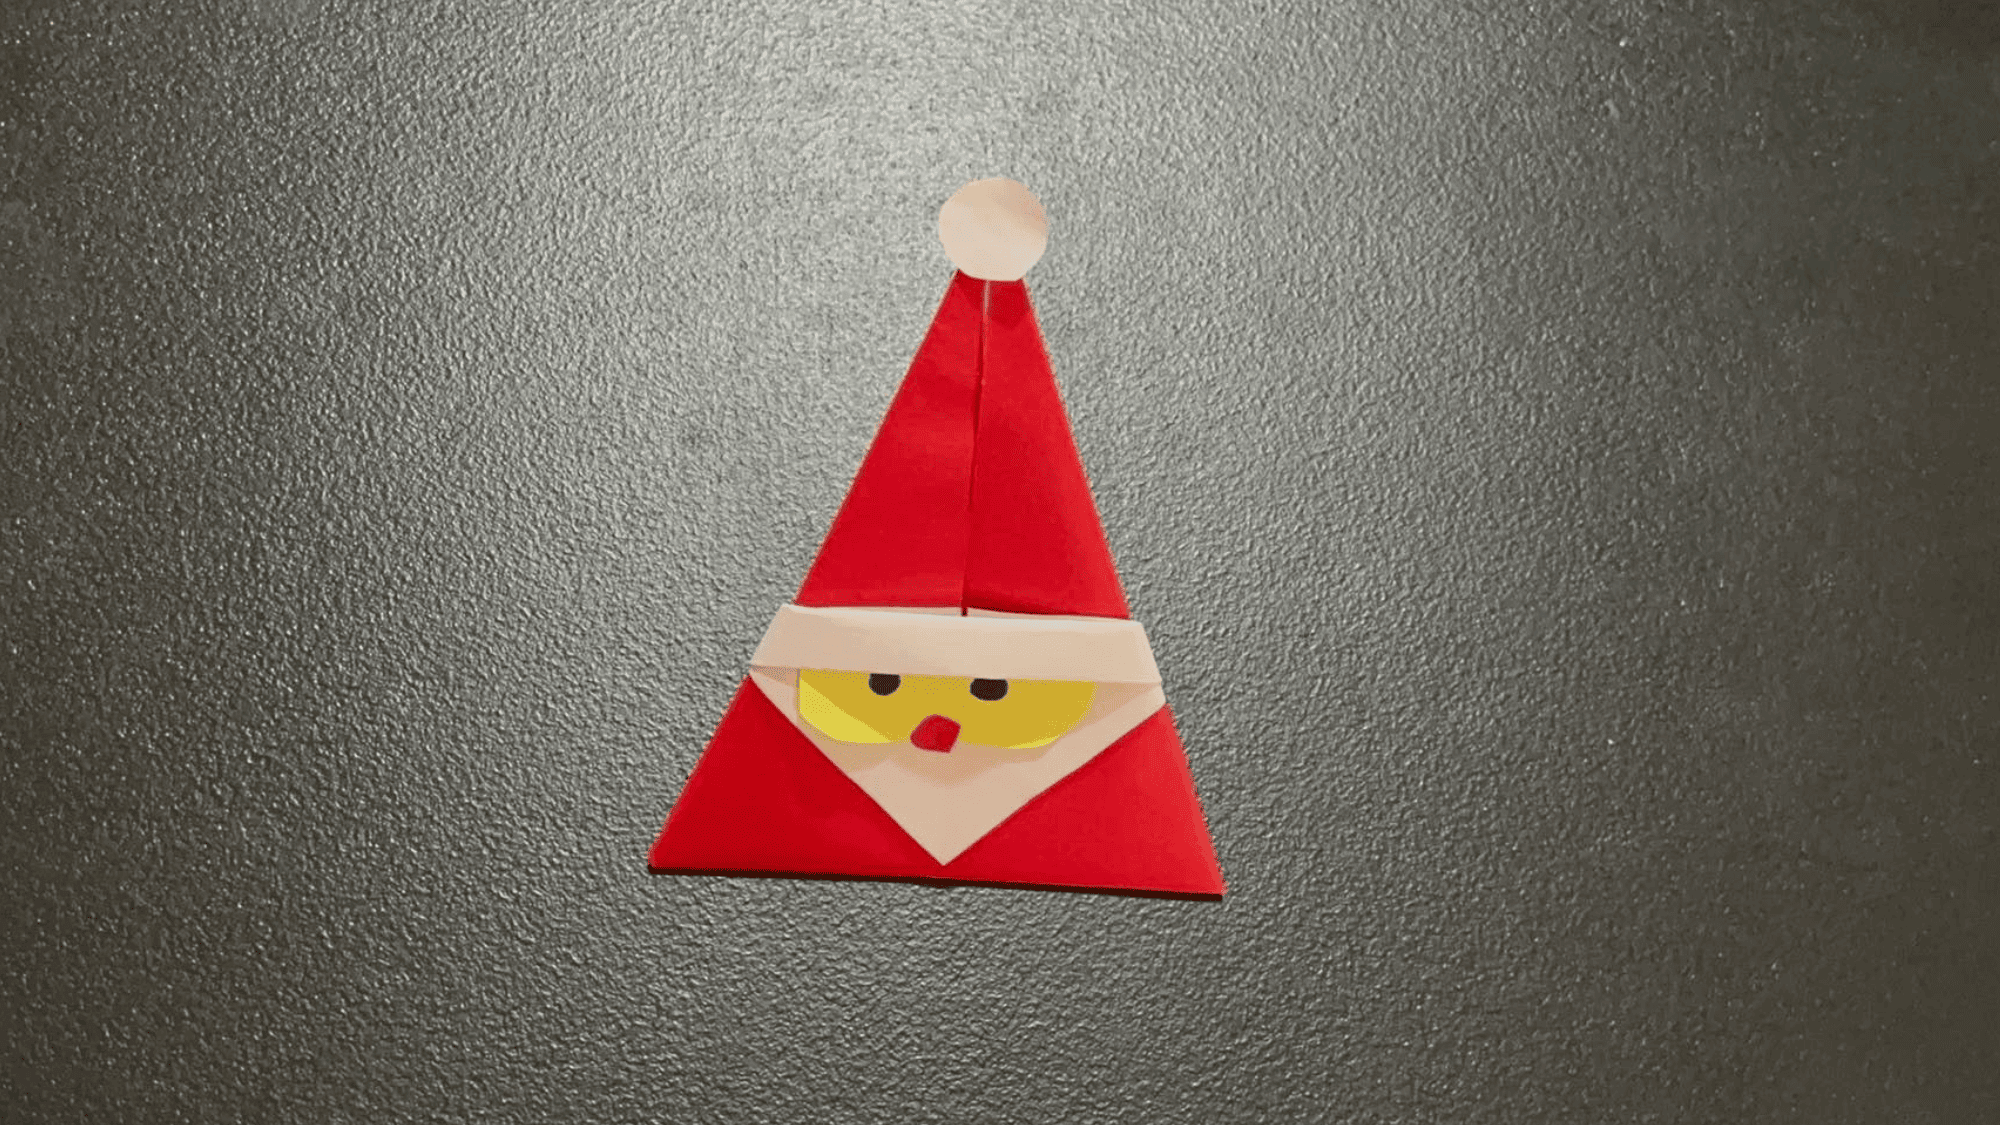 Origami Santa Claus